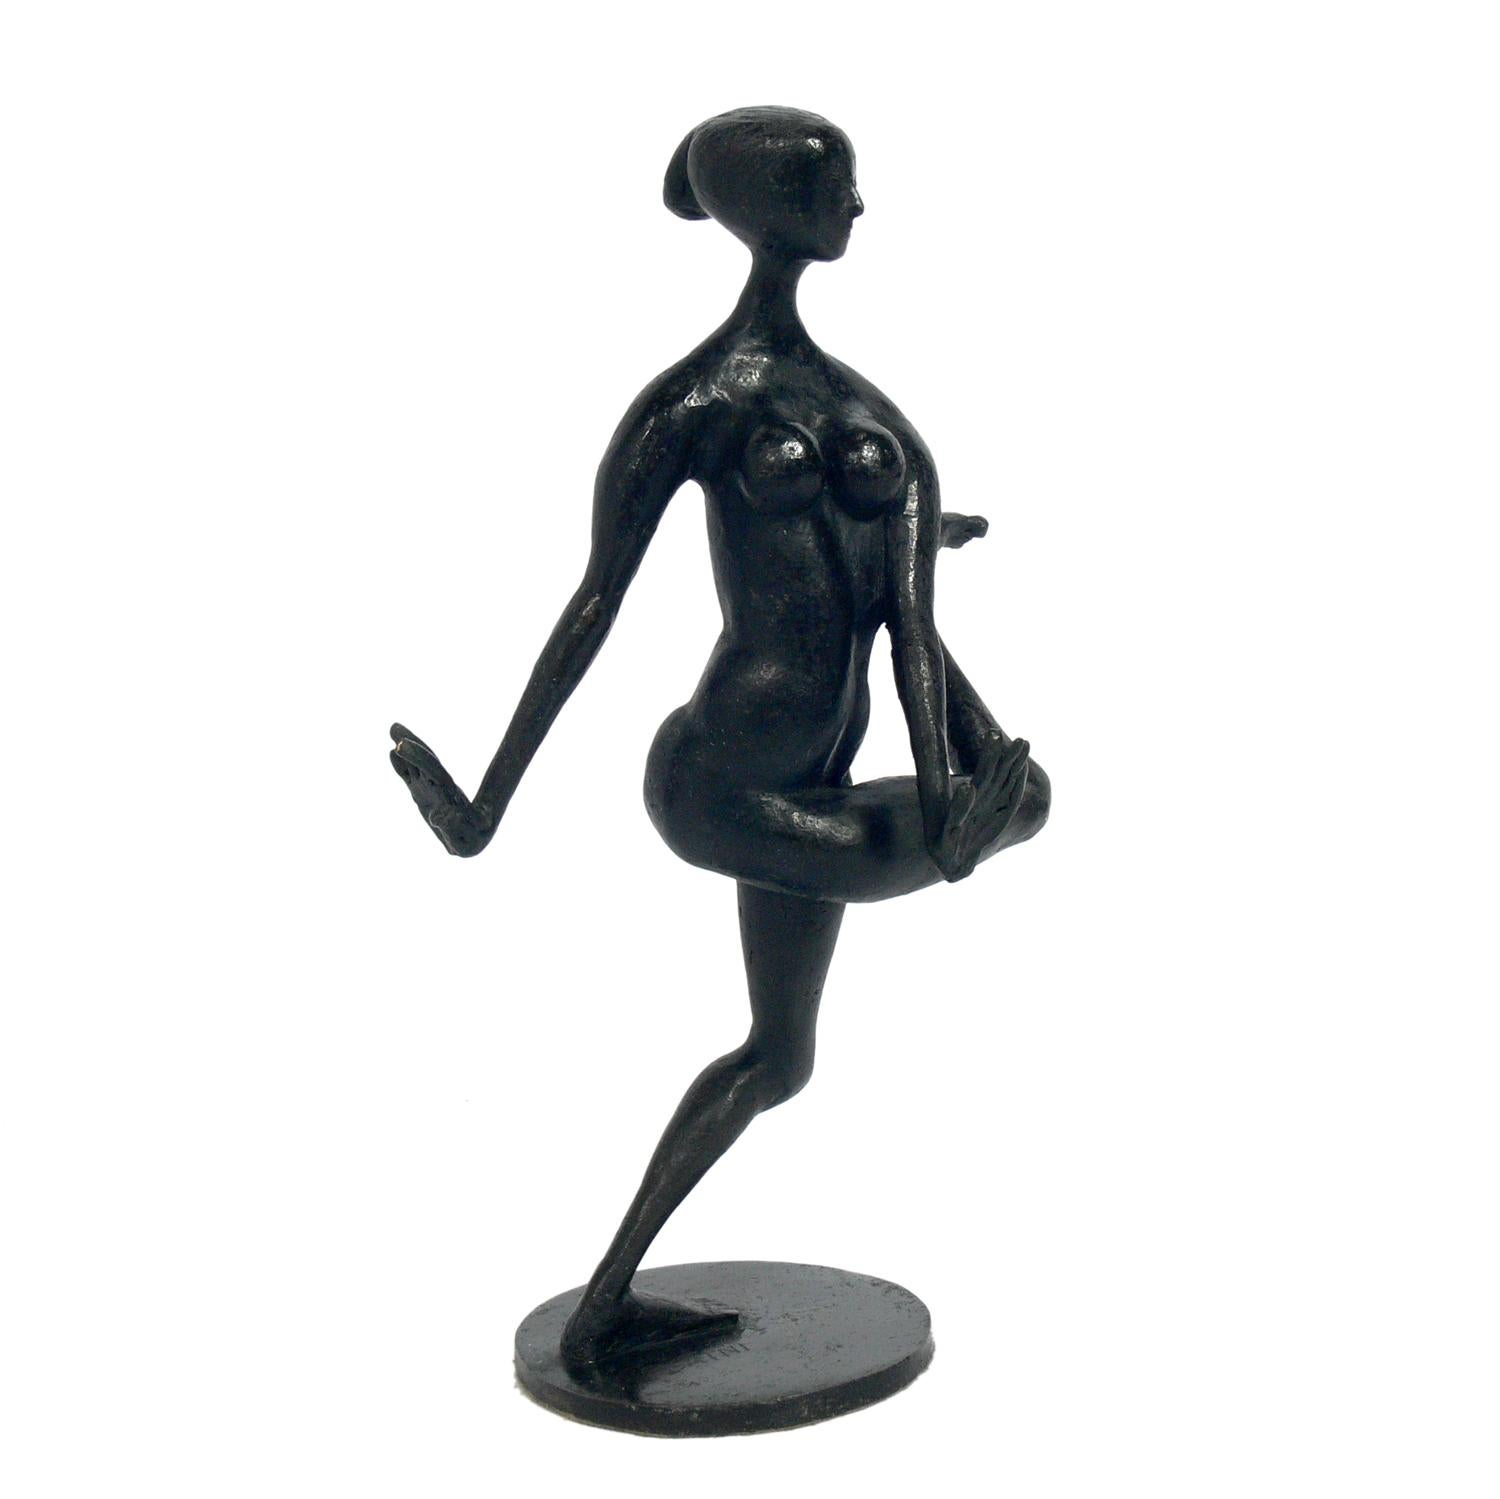 Modernistische figurale Bronzeskulpturen von Hugo Daini, Italiener, 1919-1976. Diese Skulpturen stammen wahrscheinlich aus den 1950er Jahren. Die stehende Figur misst 13 